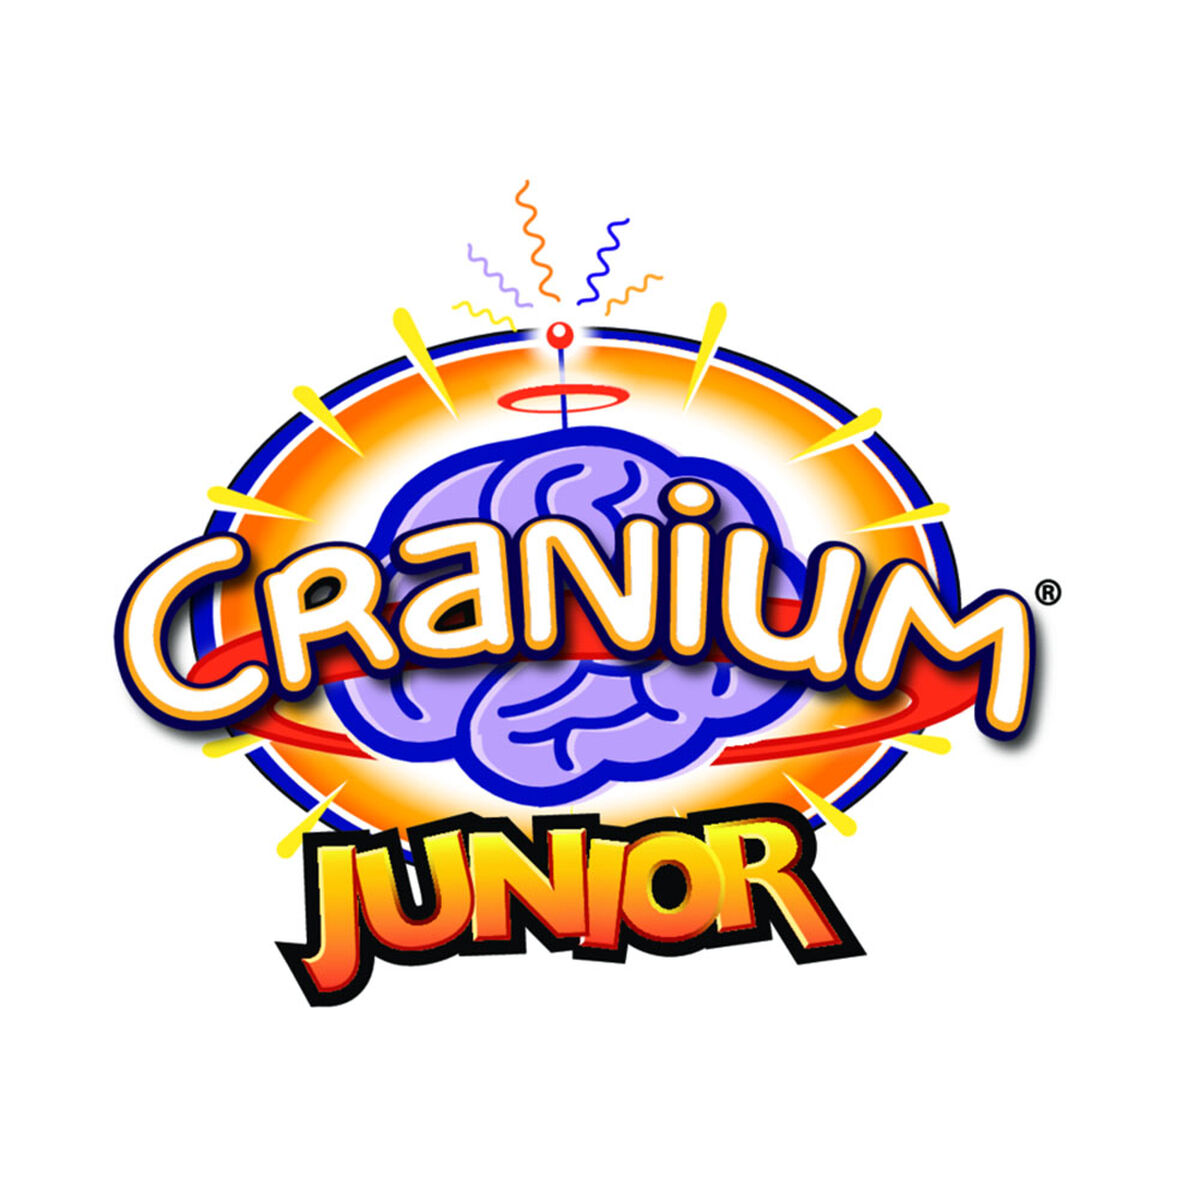 Cranium Junior